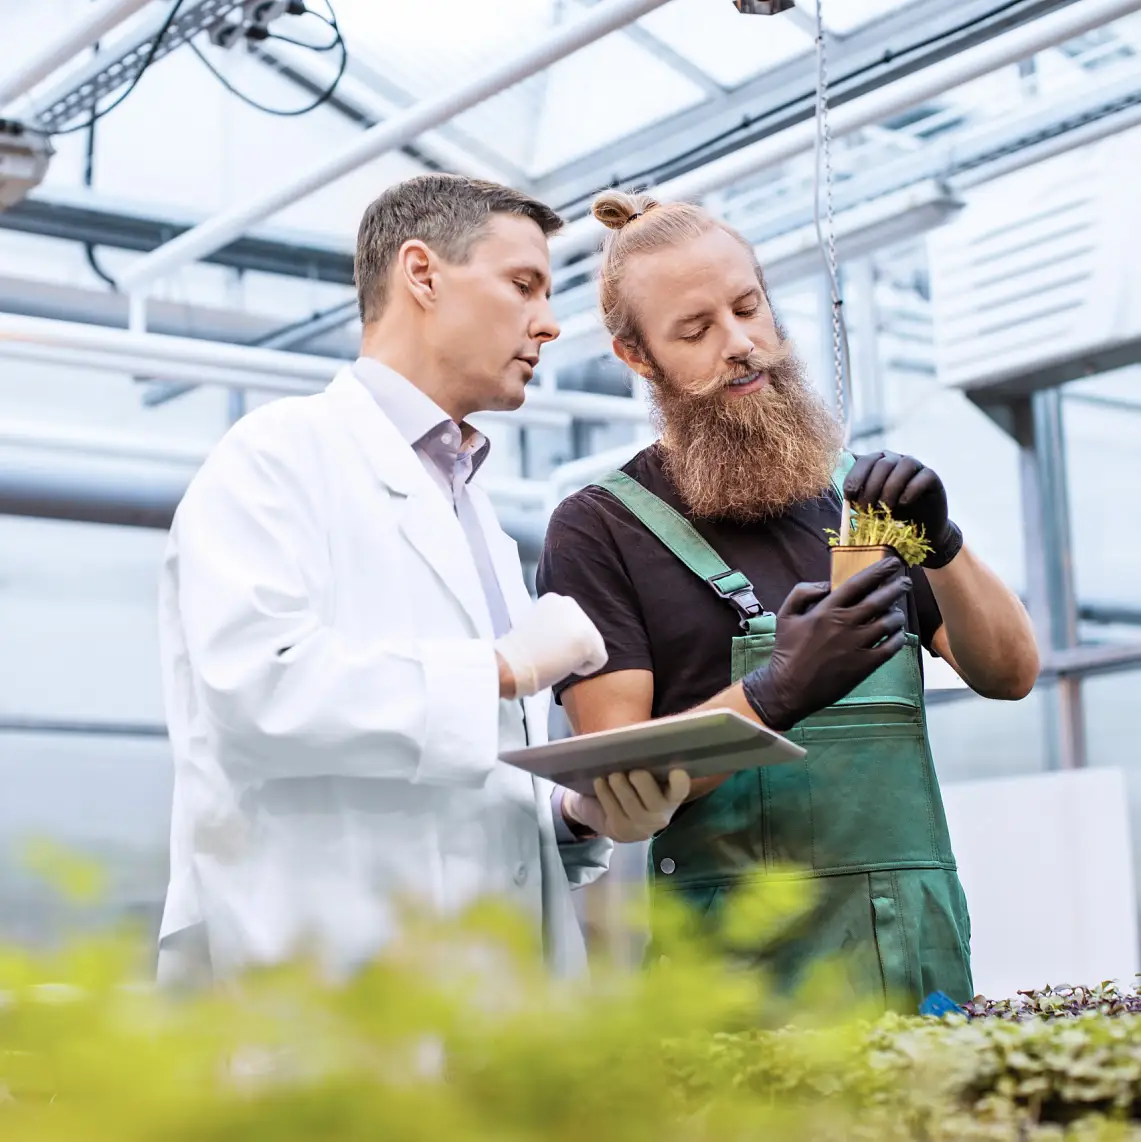 Manlig forskare och arbetare inspekterar växterna för eventuella sjukdomar i ett växthus